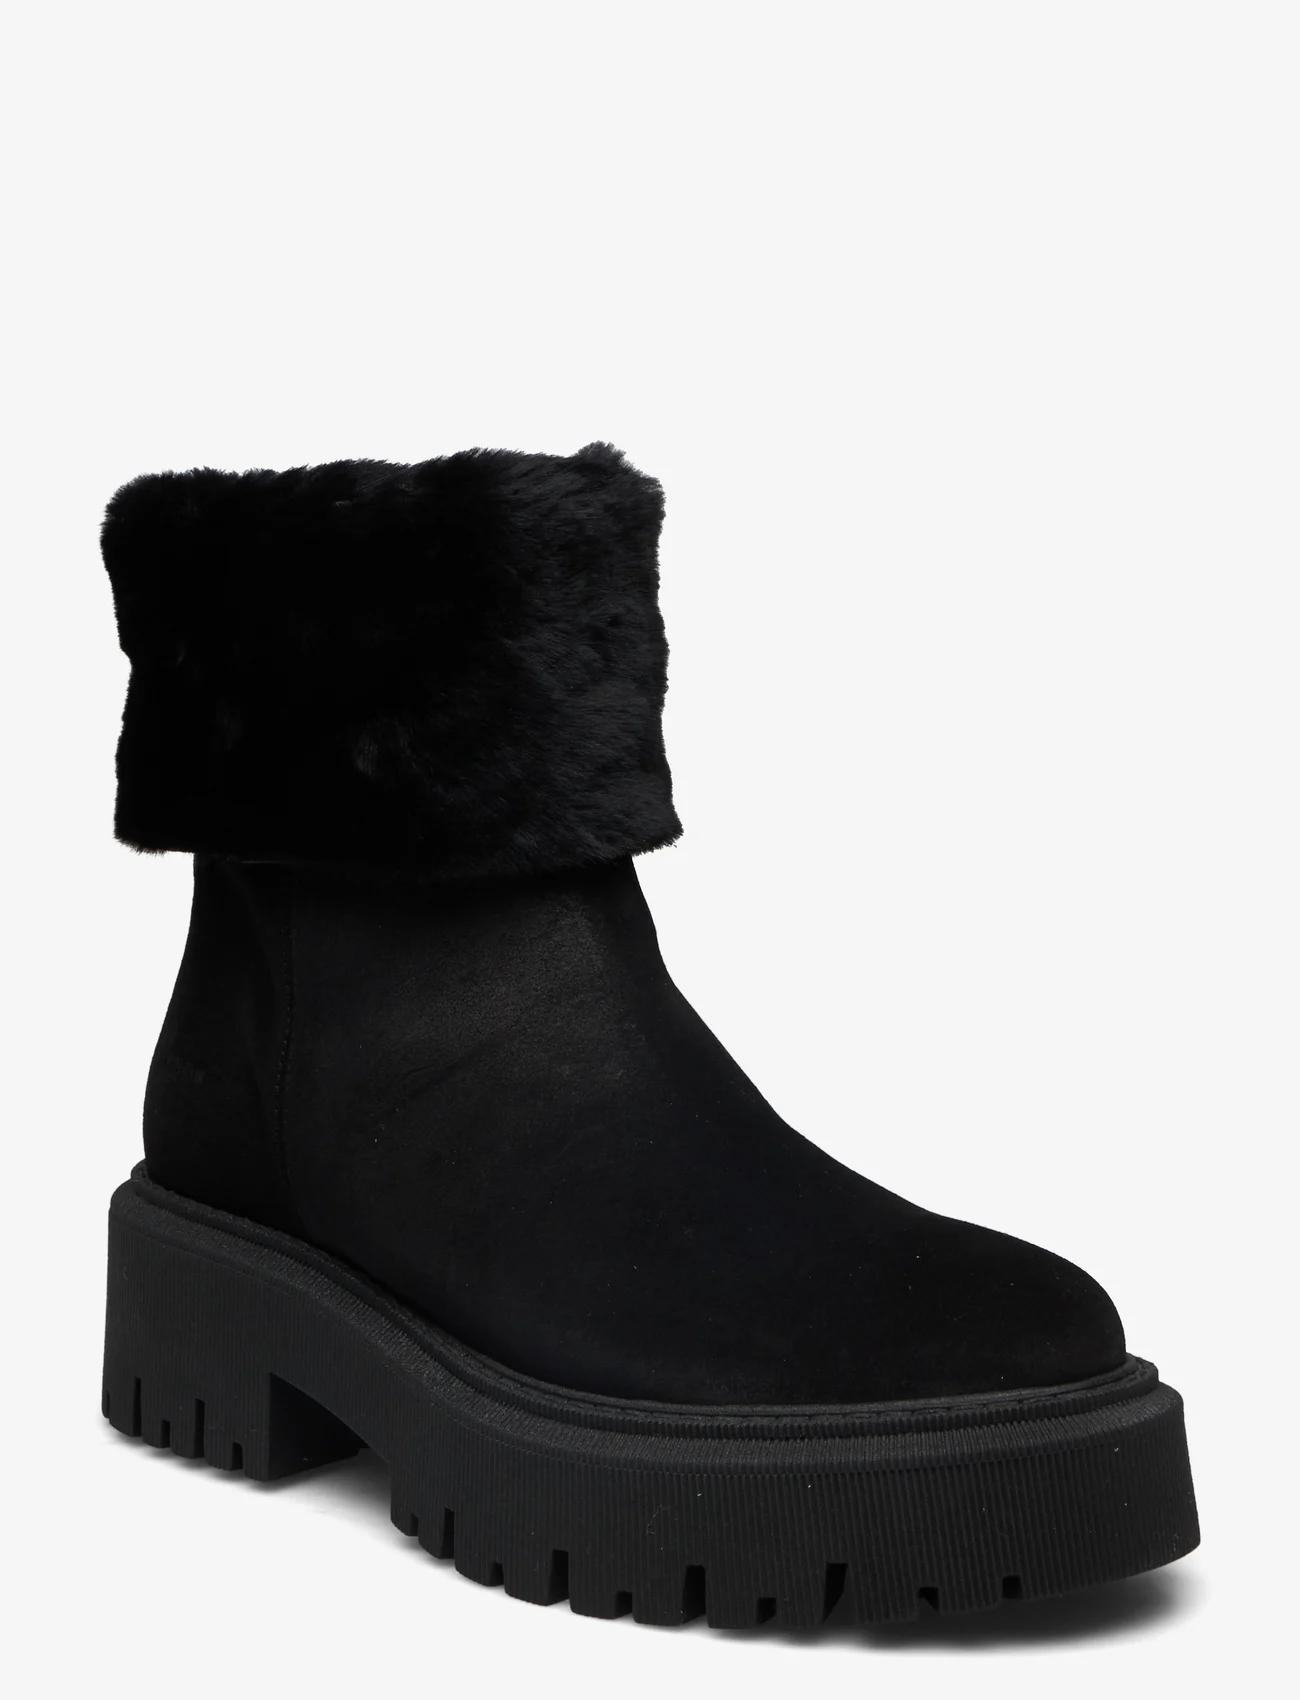 ANGULUS - Boots - flat - women - 1163/2014 black/black lamb woo - 0